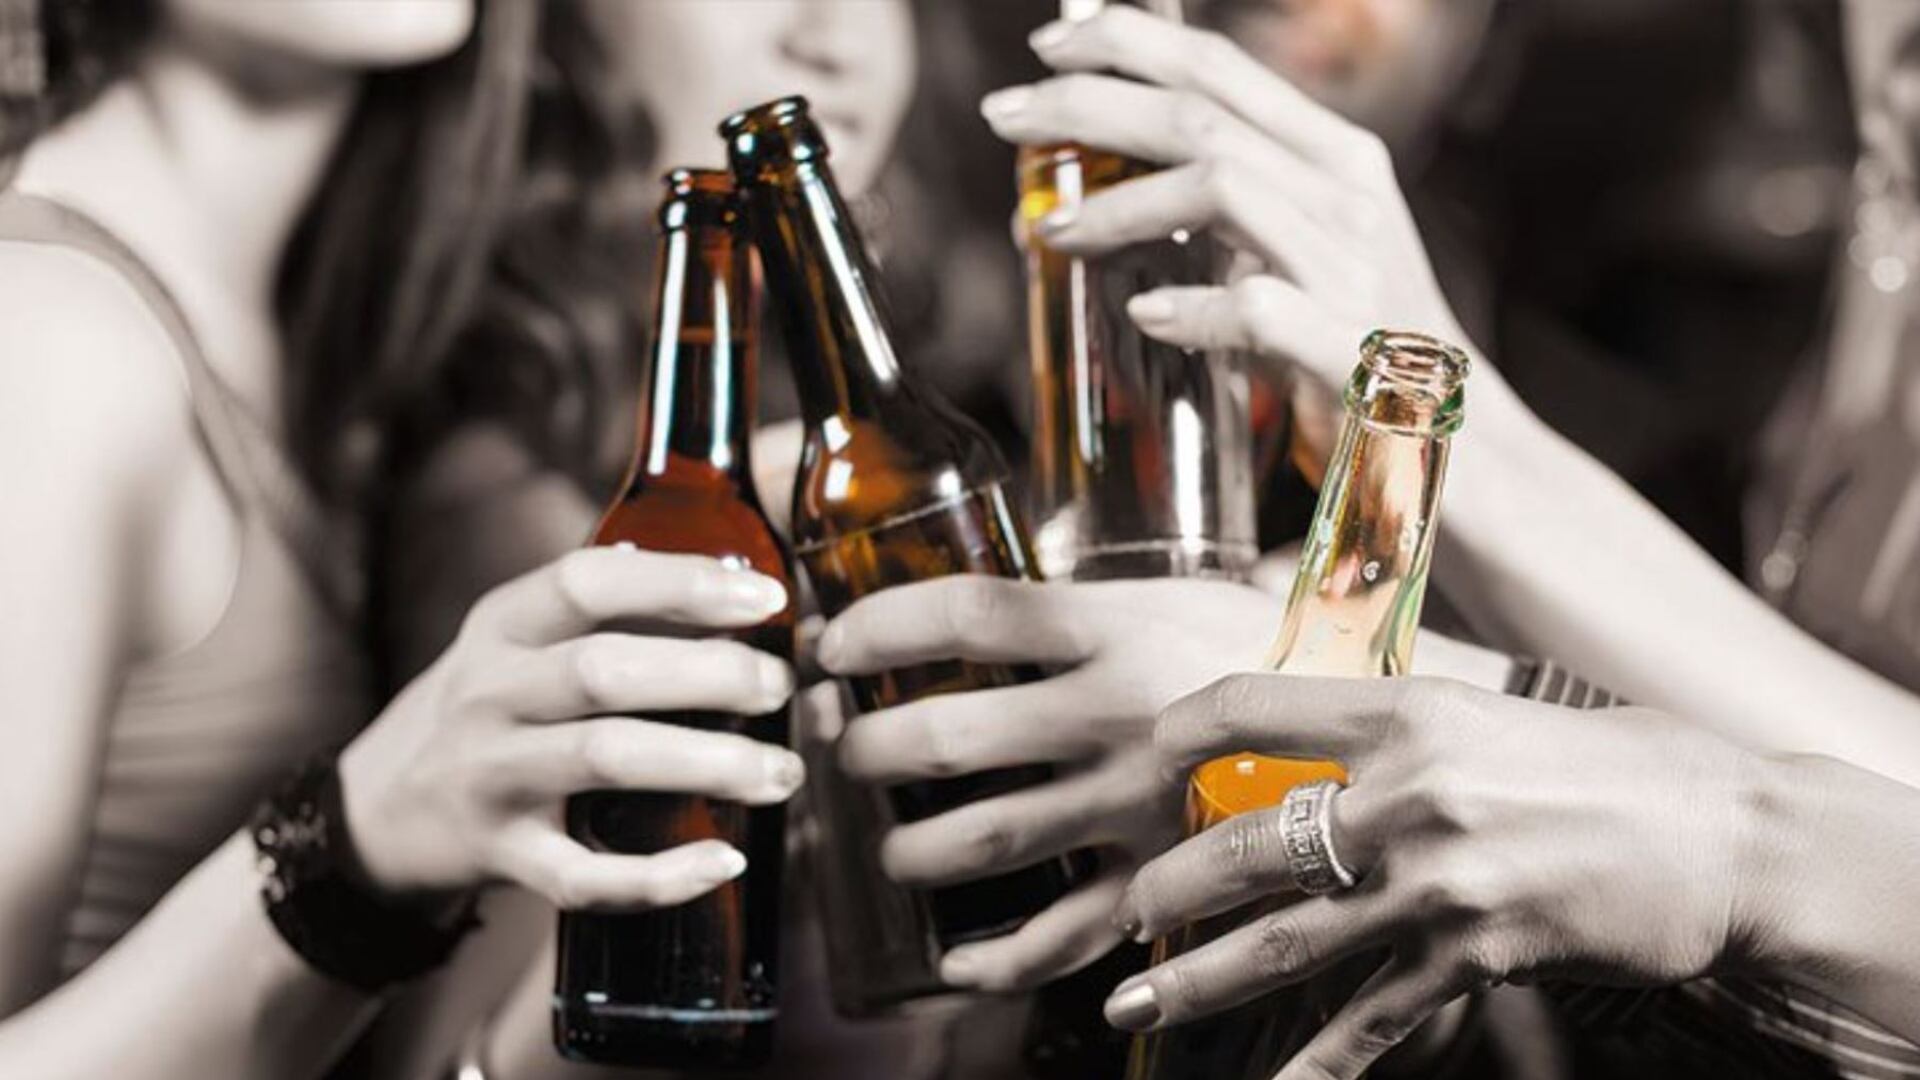 Ministerio de salud advierte no consumir bebidas alcohólicas de la marca Punto D Oro